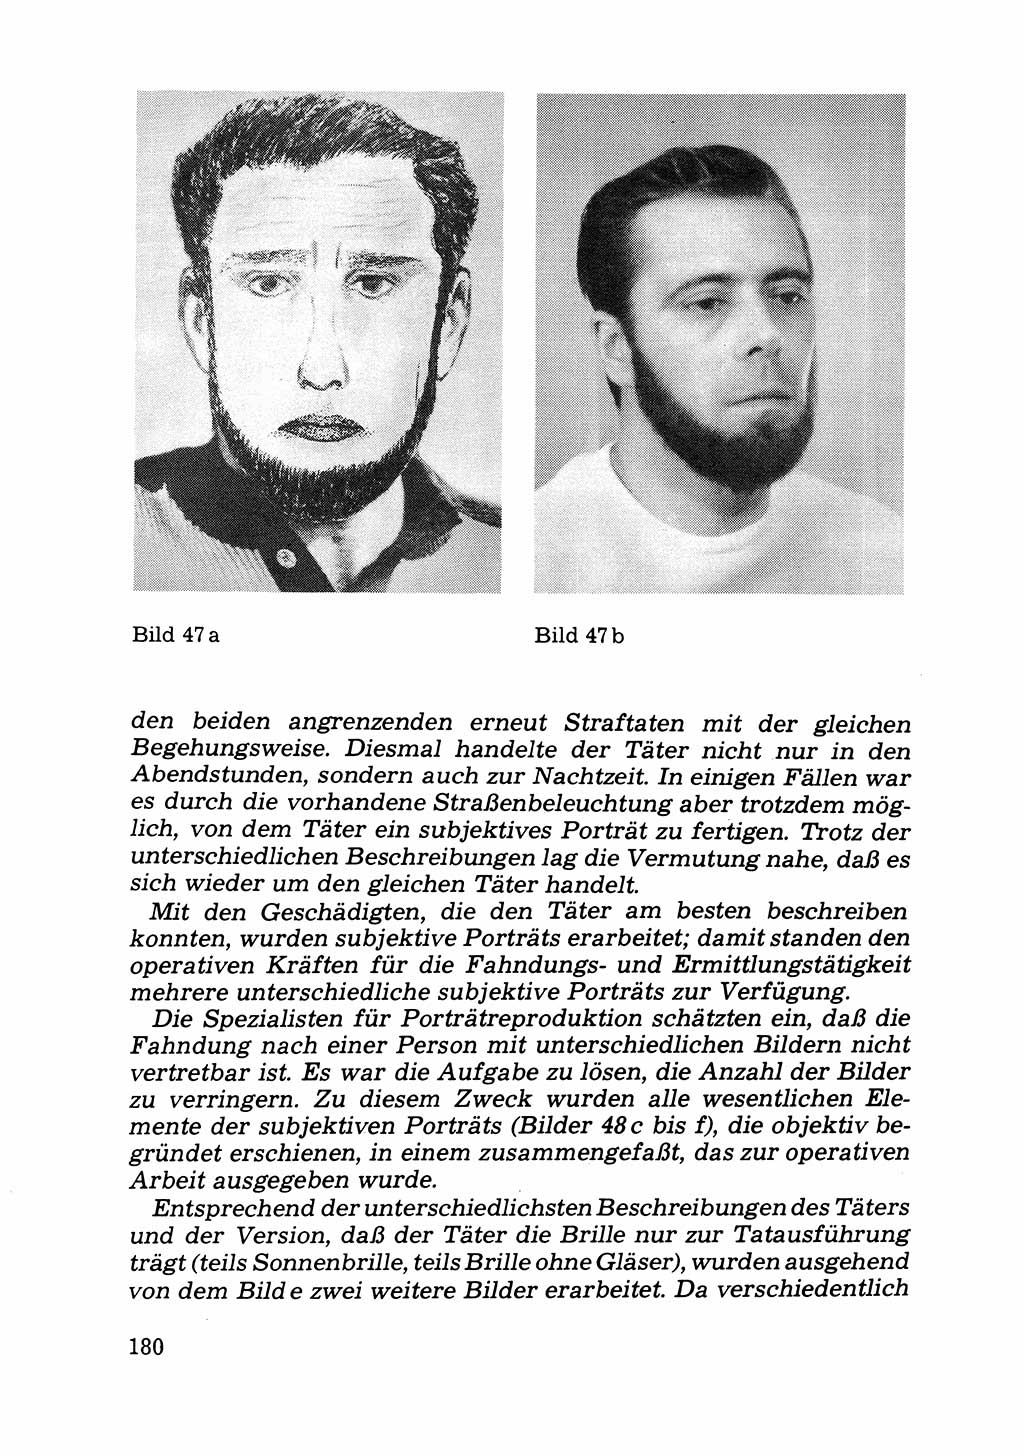 Das subjektive Porträt [Deutsche Demokratische Republik (DDR)] 1981, Seite 180 (Subj. Port. DDR 1981, S. 180)